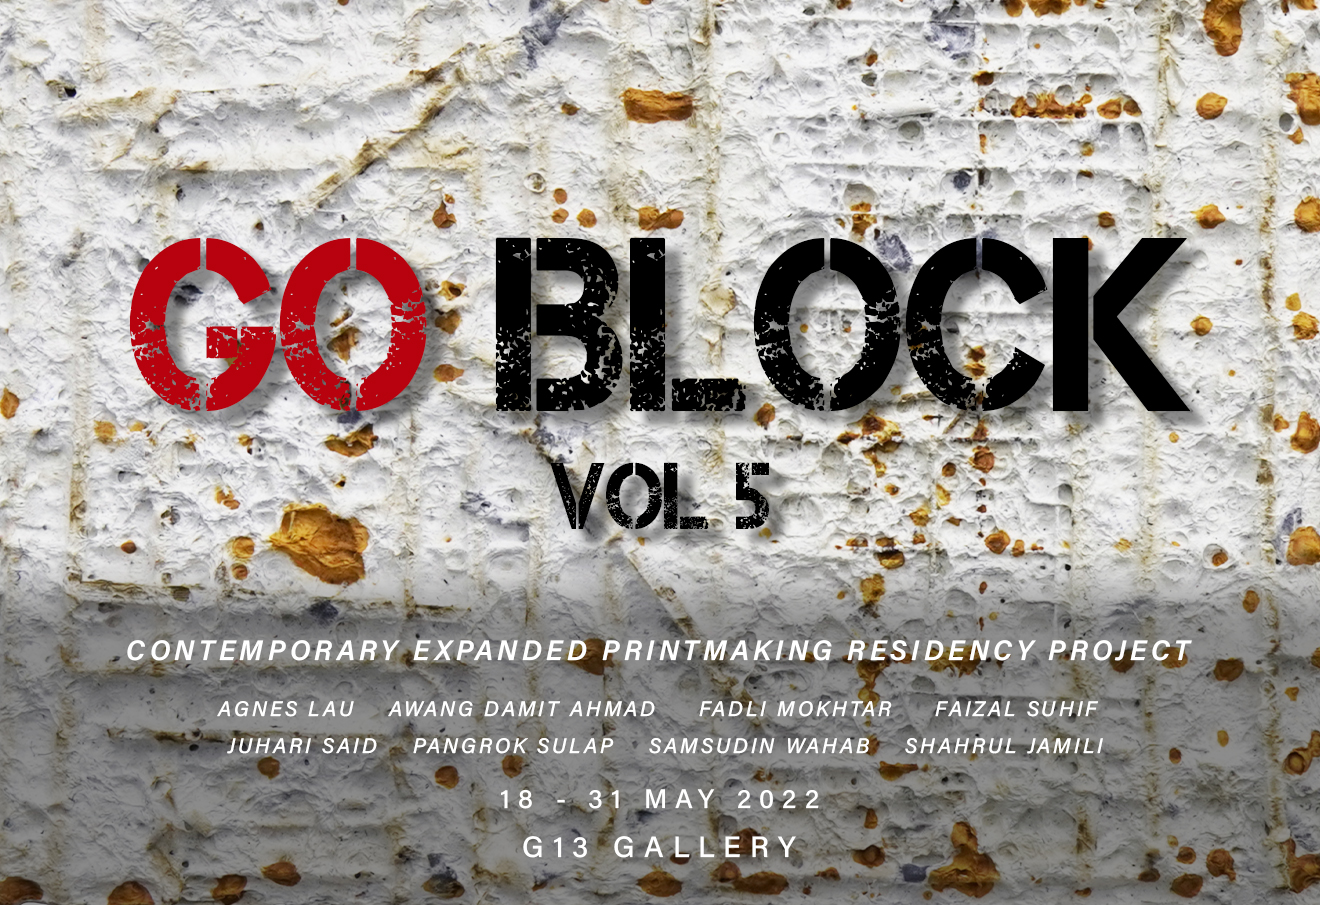 Go Block Vol 5